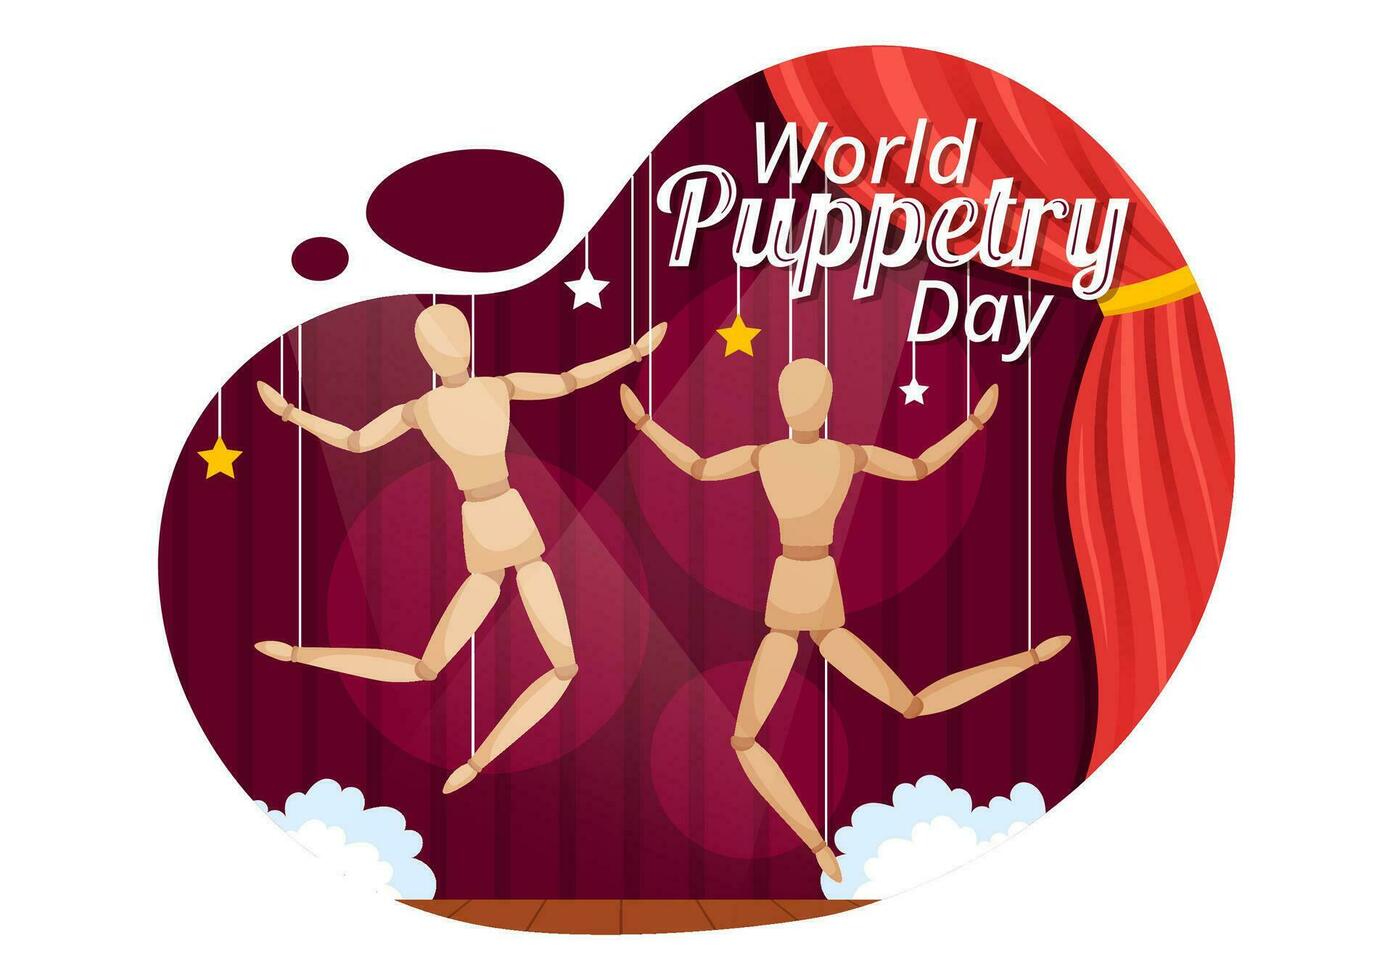 Welt Puppenspiel Tag Vektor Illustration auf März 21 zum Marionette Feste welche ist gerührt durch das Finger Hände im eben Karikatur Hintergrund Design